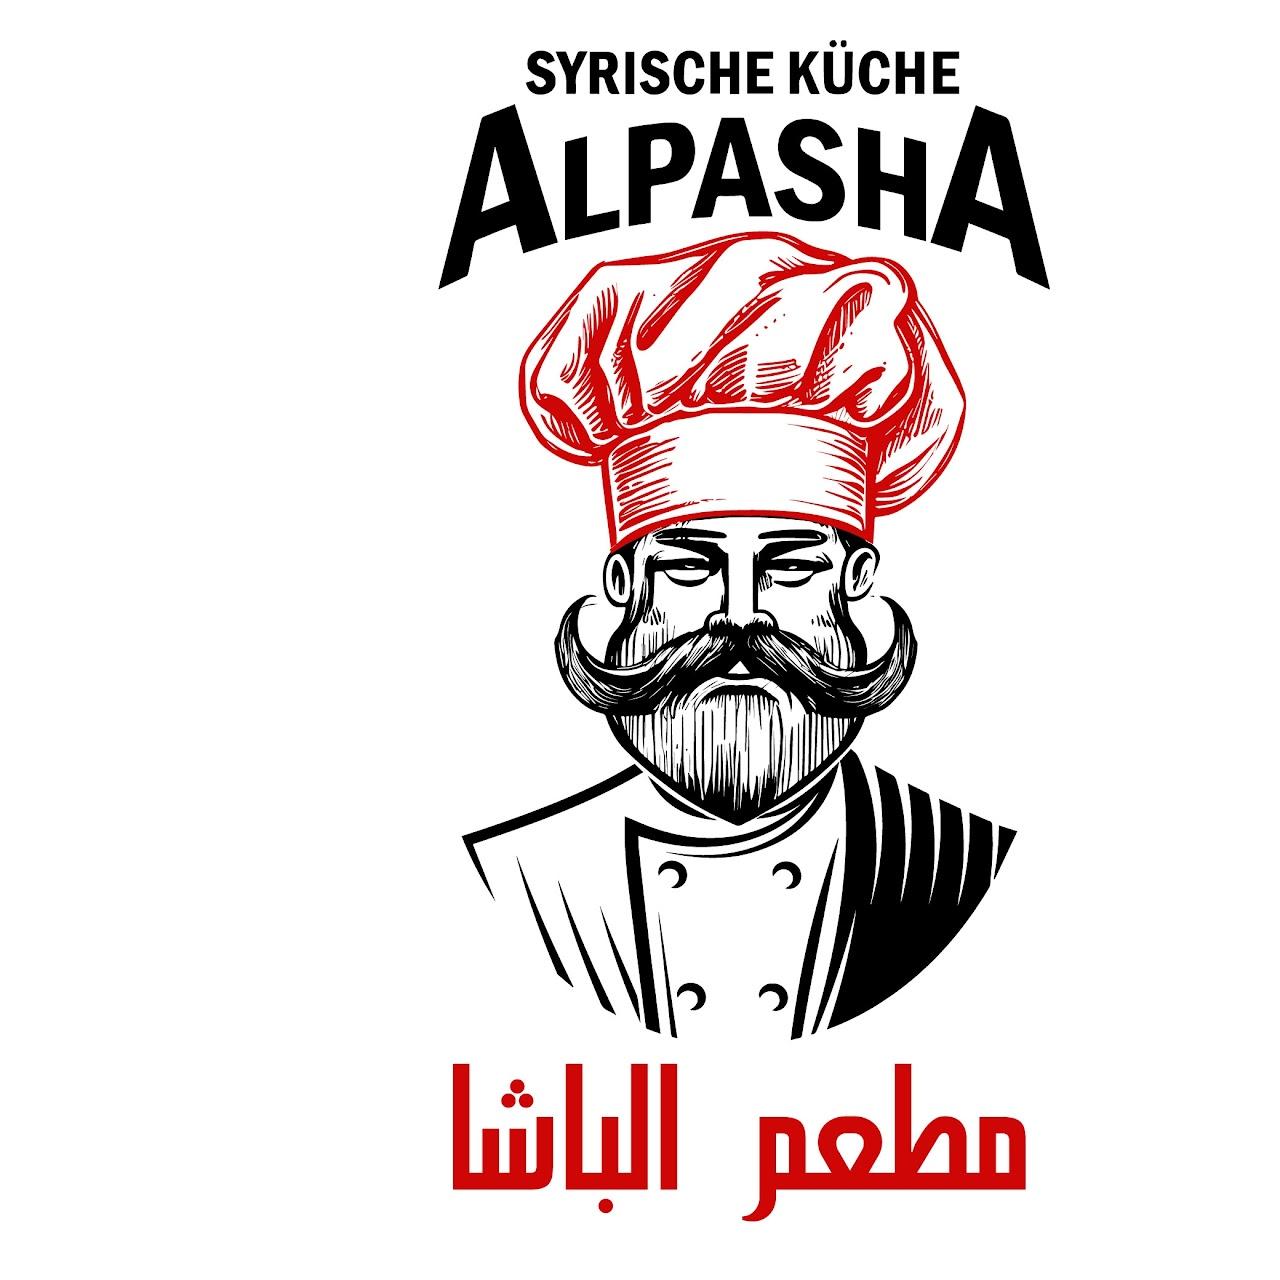 Restaurant "ALPASHA syrische Küche" in Ransbach-Baumbach